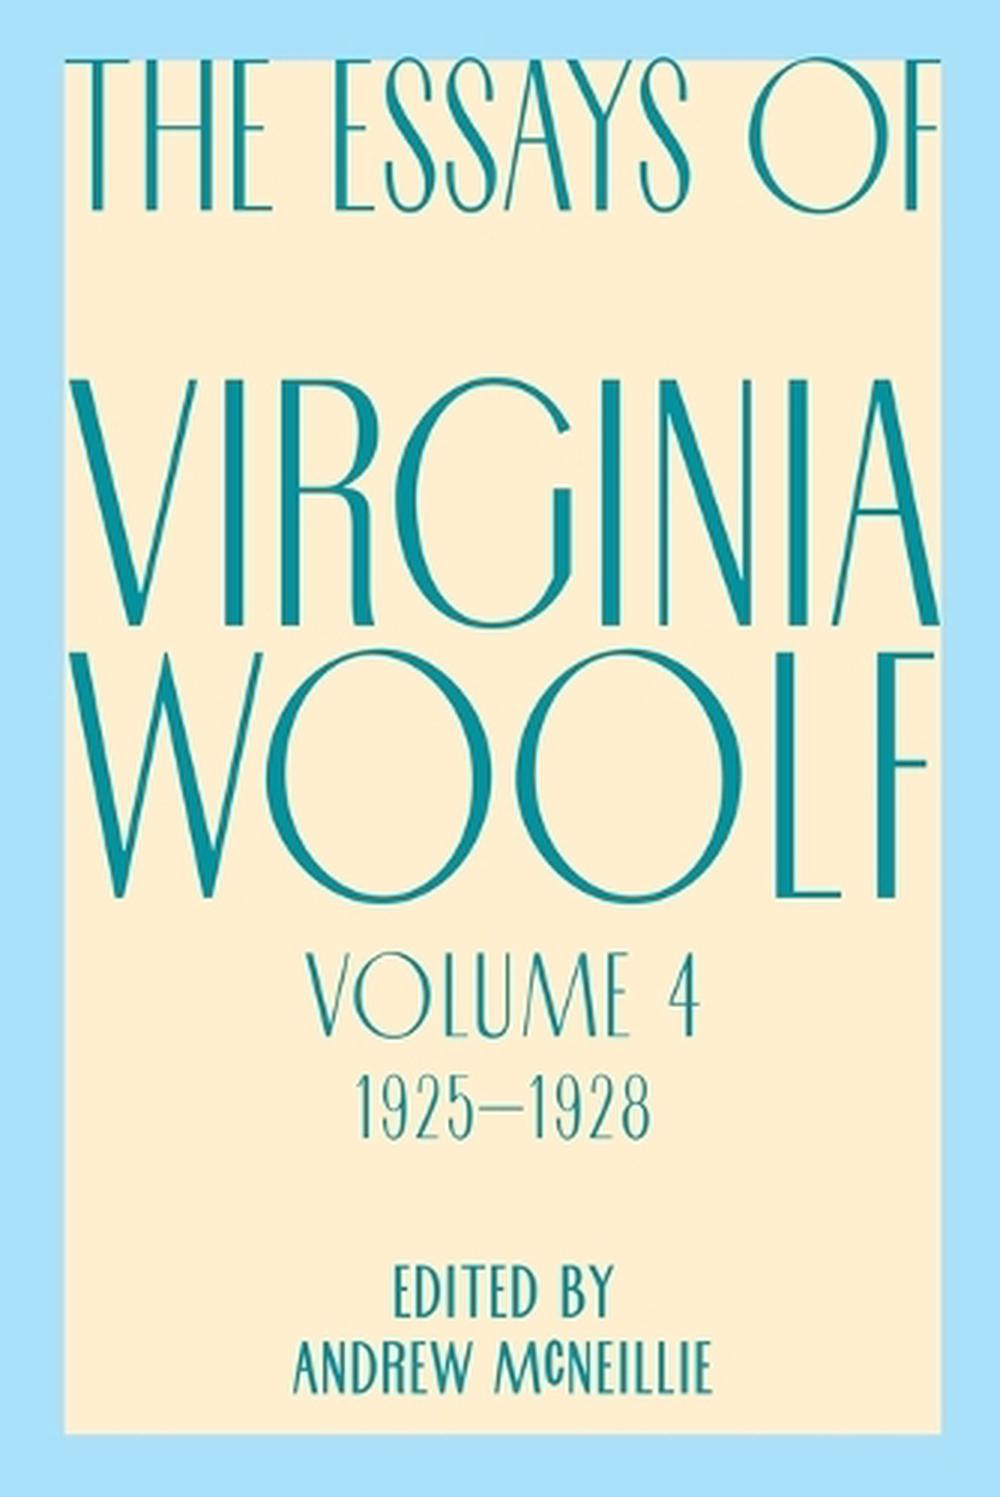 virginia woolf essay crossword